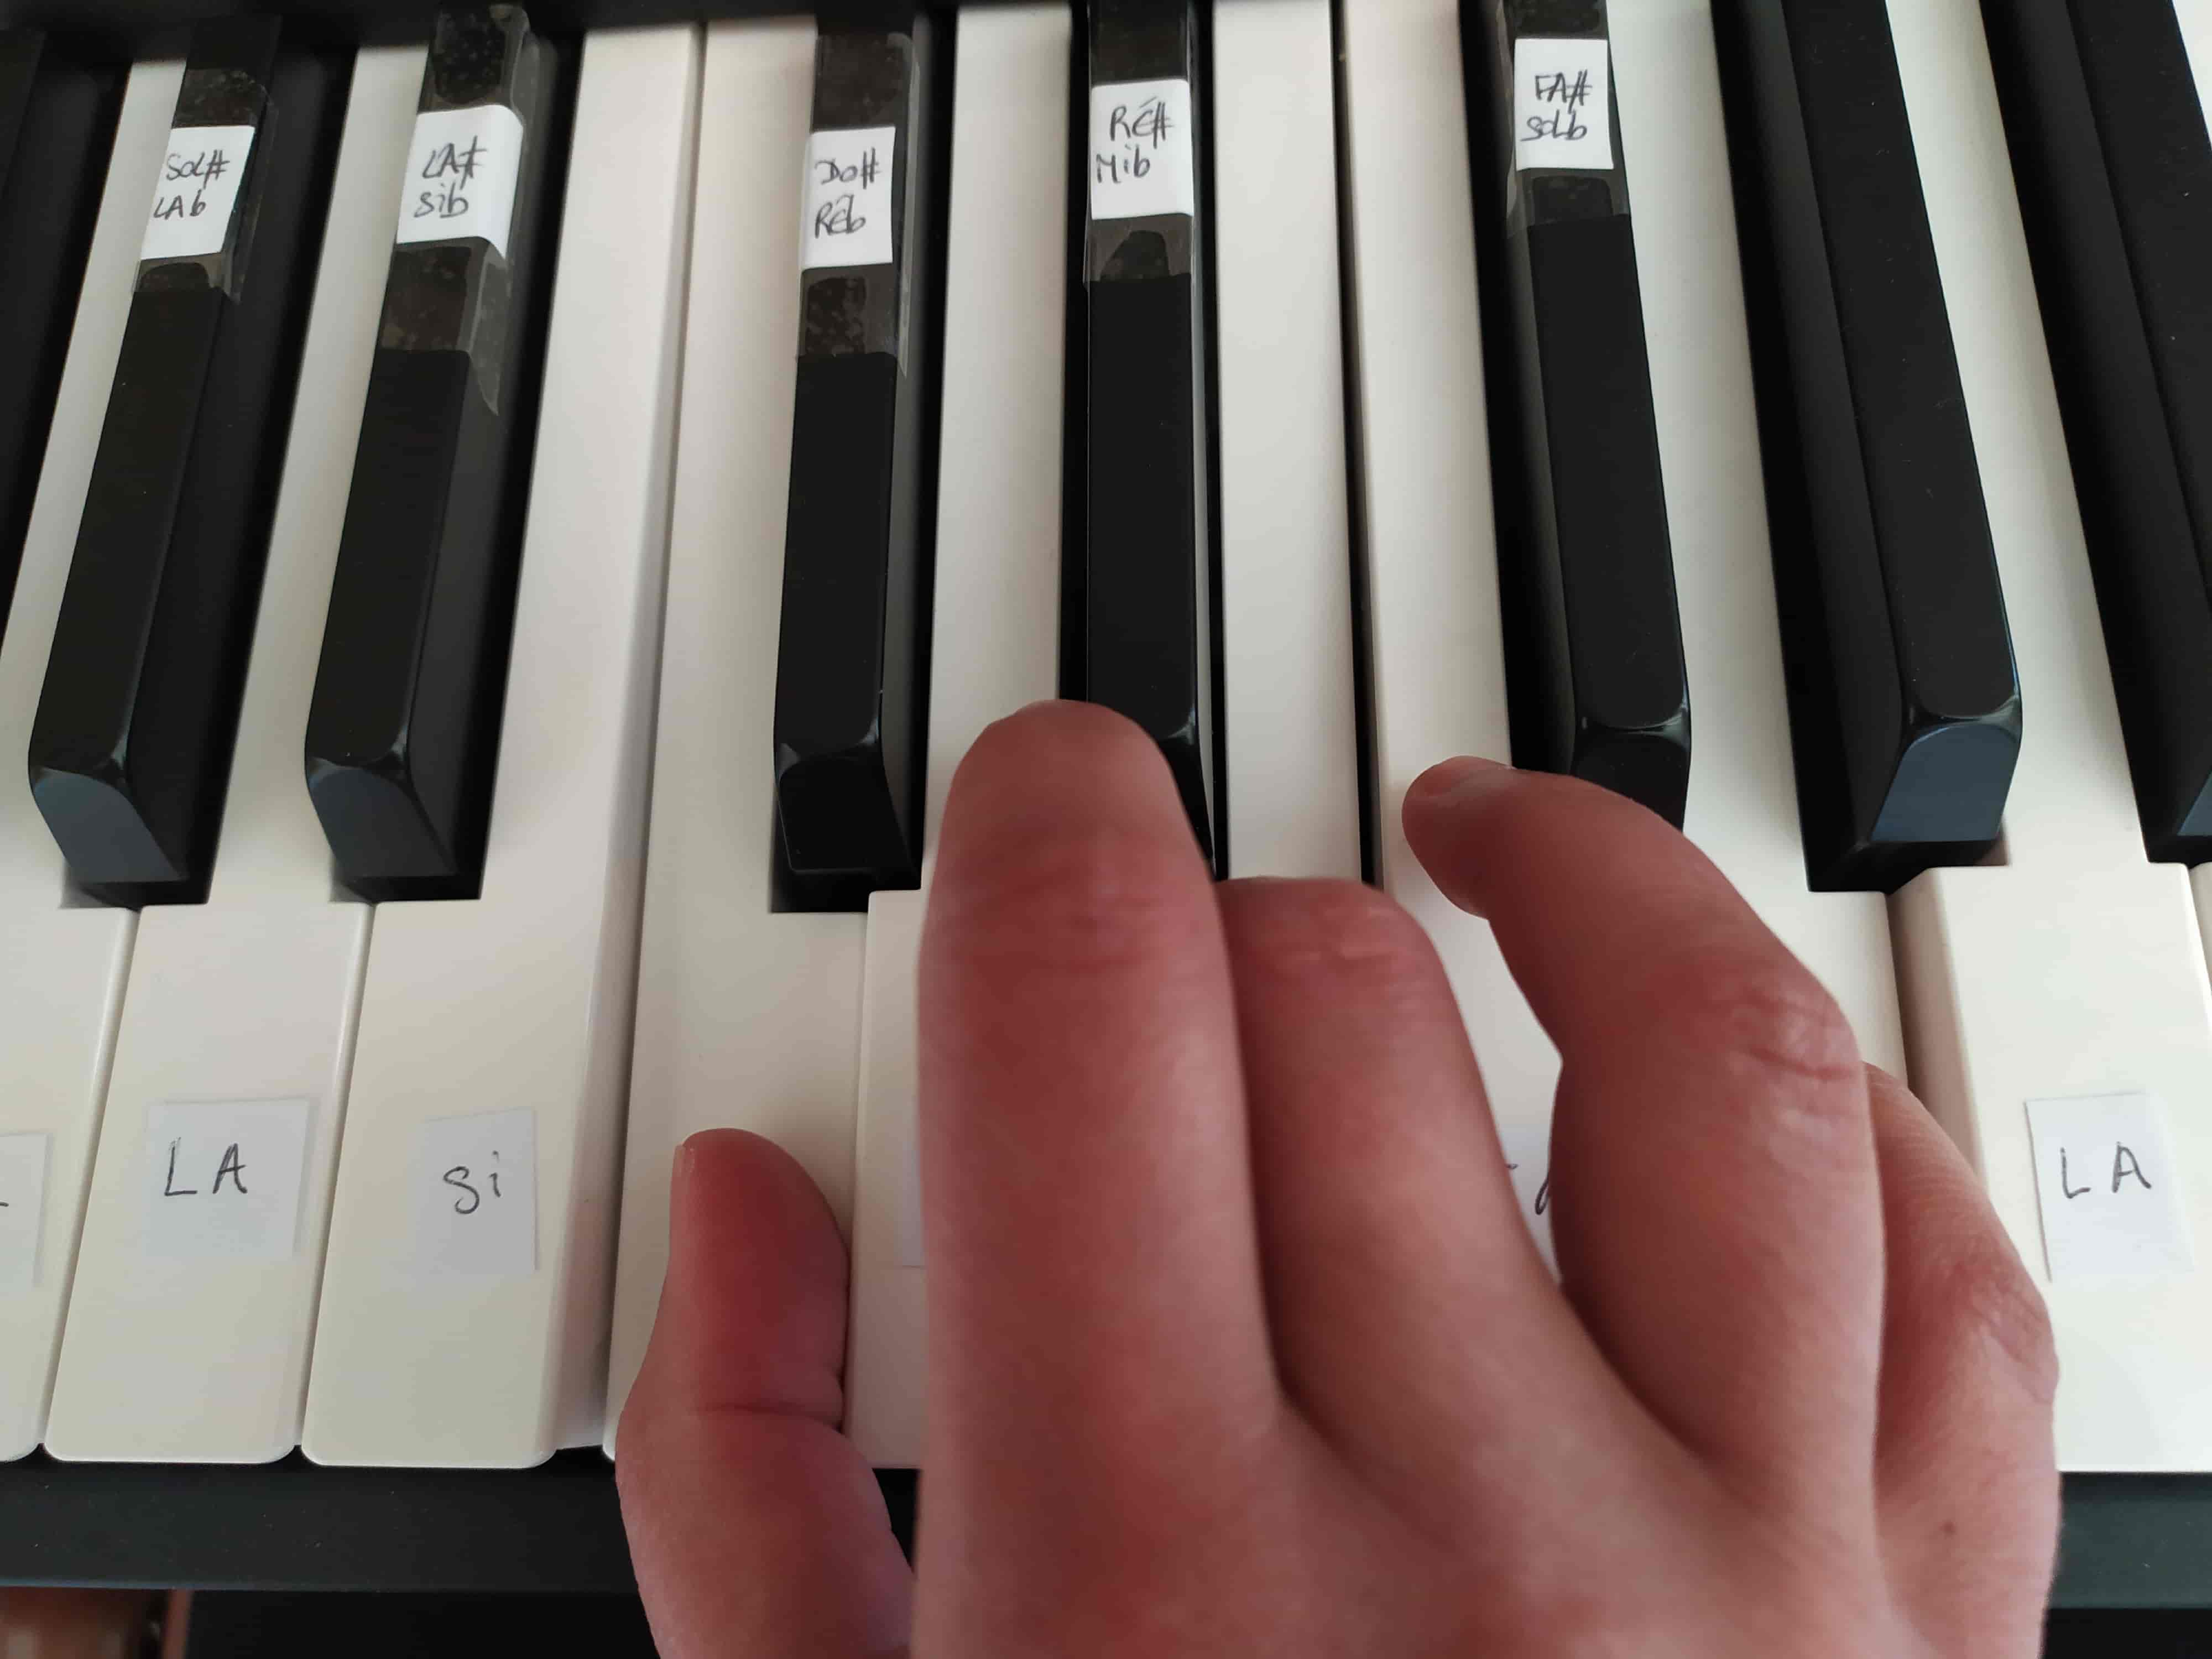 Autocollants piano : bonne ou mauvaise idée pour se repérer sur son piano ?  - MyPianoPop - Cours de Piano Pop en ligne